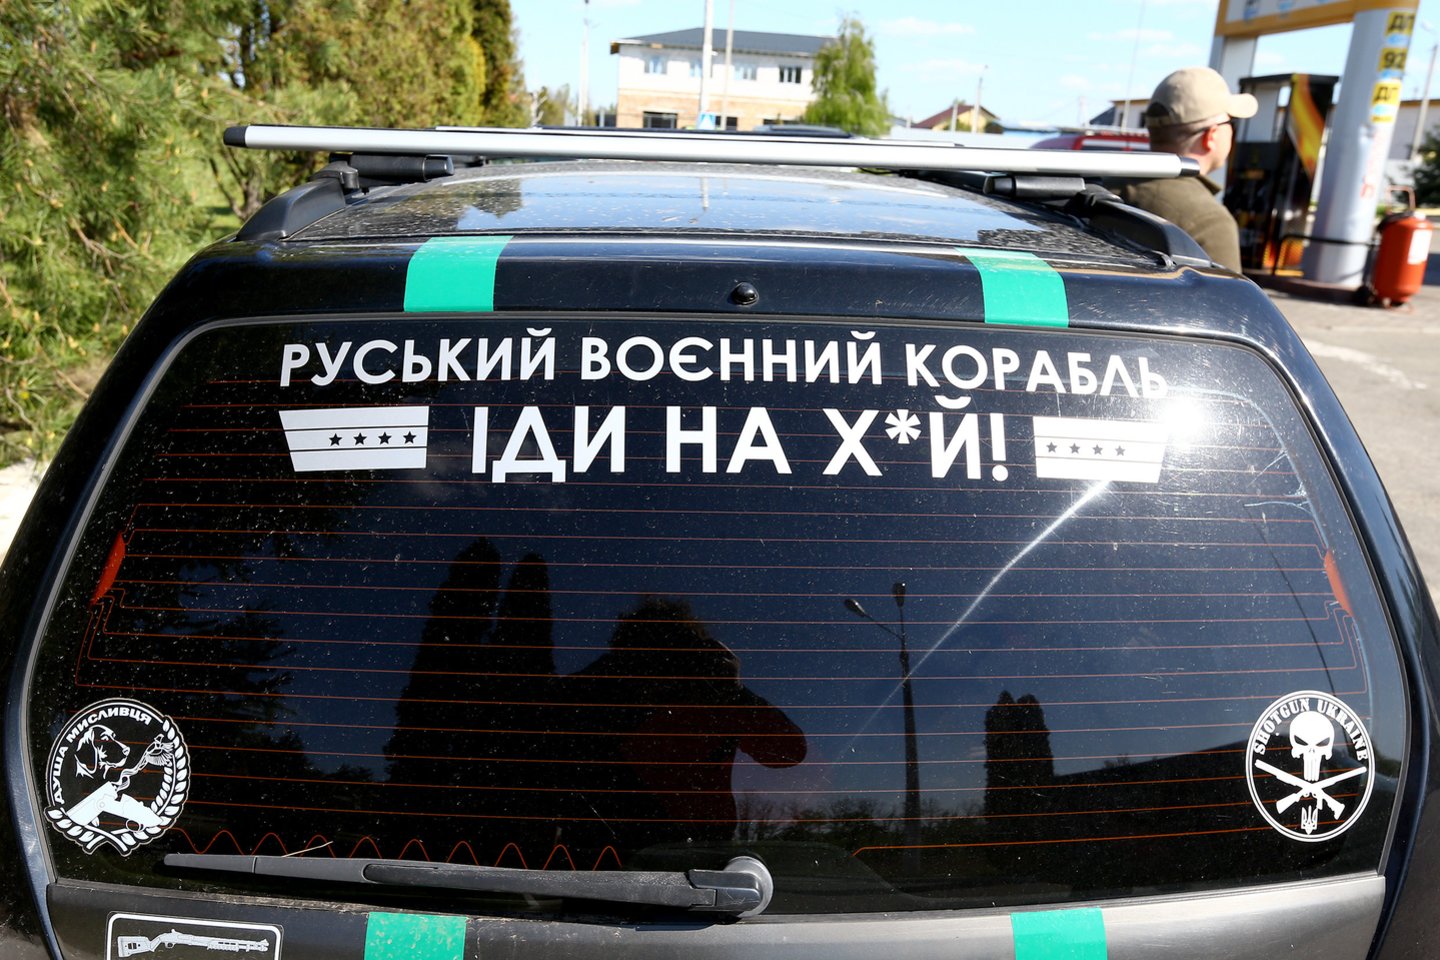  Visame pasaulyje išpopuliarėjusią frazę galima išvysti ant dažno ukrainiečio automobilio.<br> G.Šiupario nuotr.